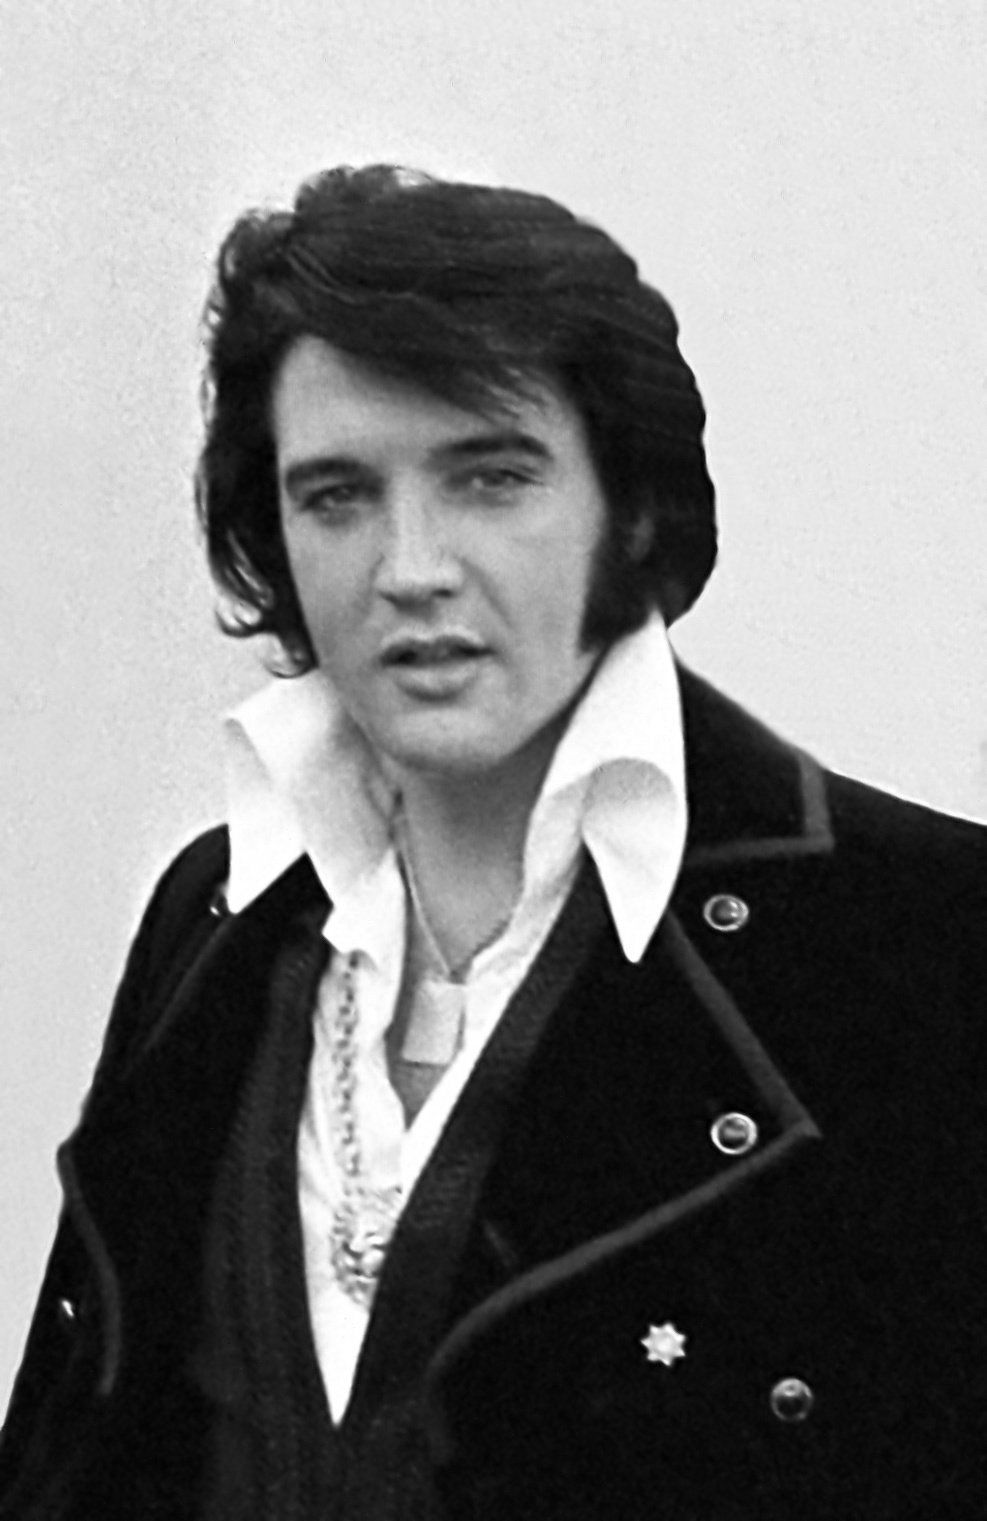 Video av Elvis som sjunger 'Always on My Mind' i kombination med sällsynta Presley Family Footage